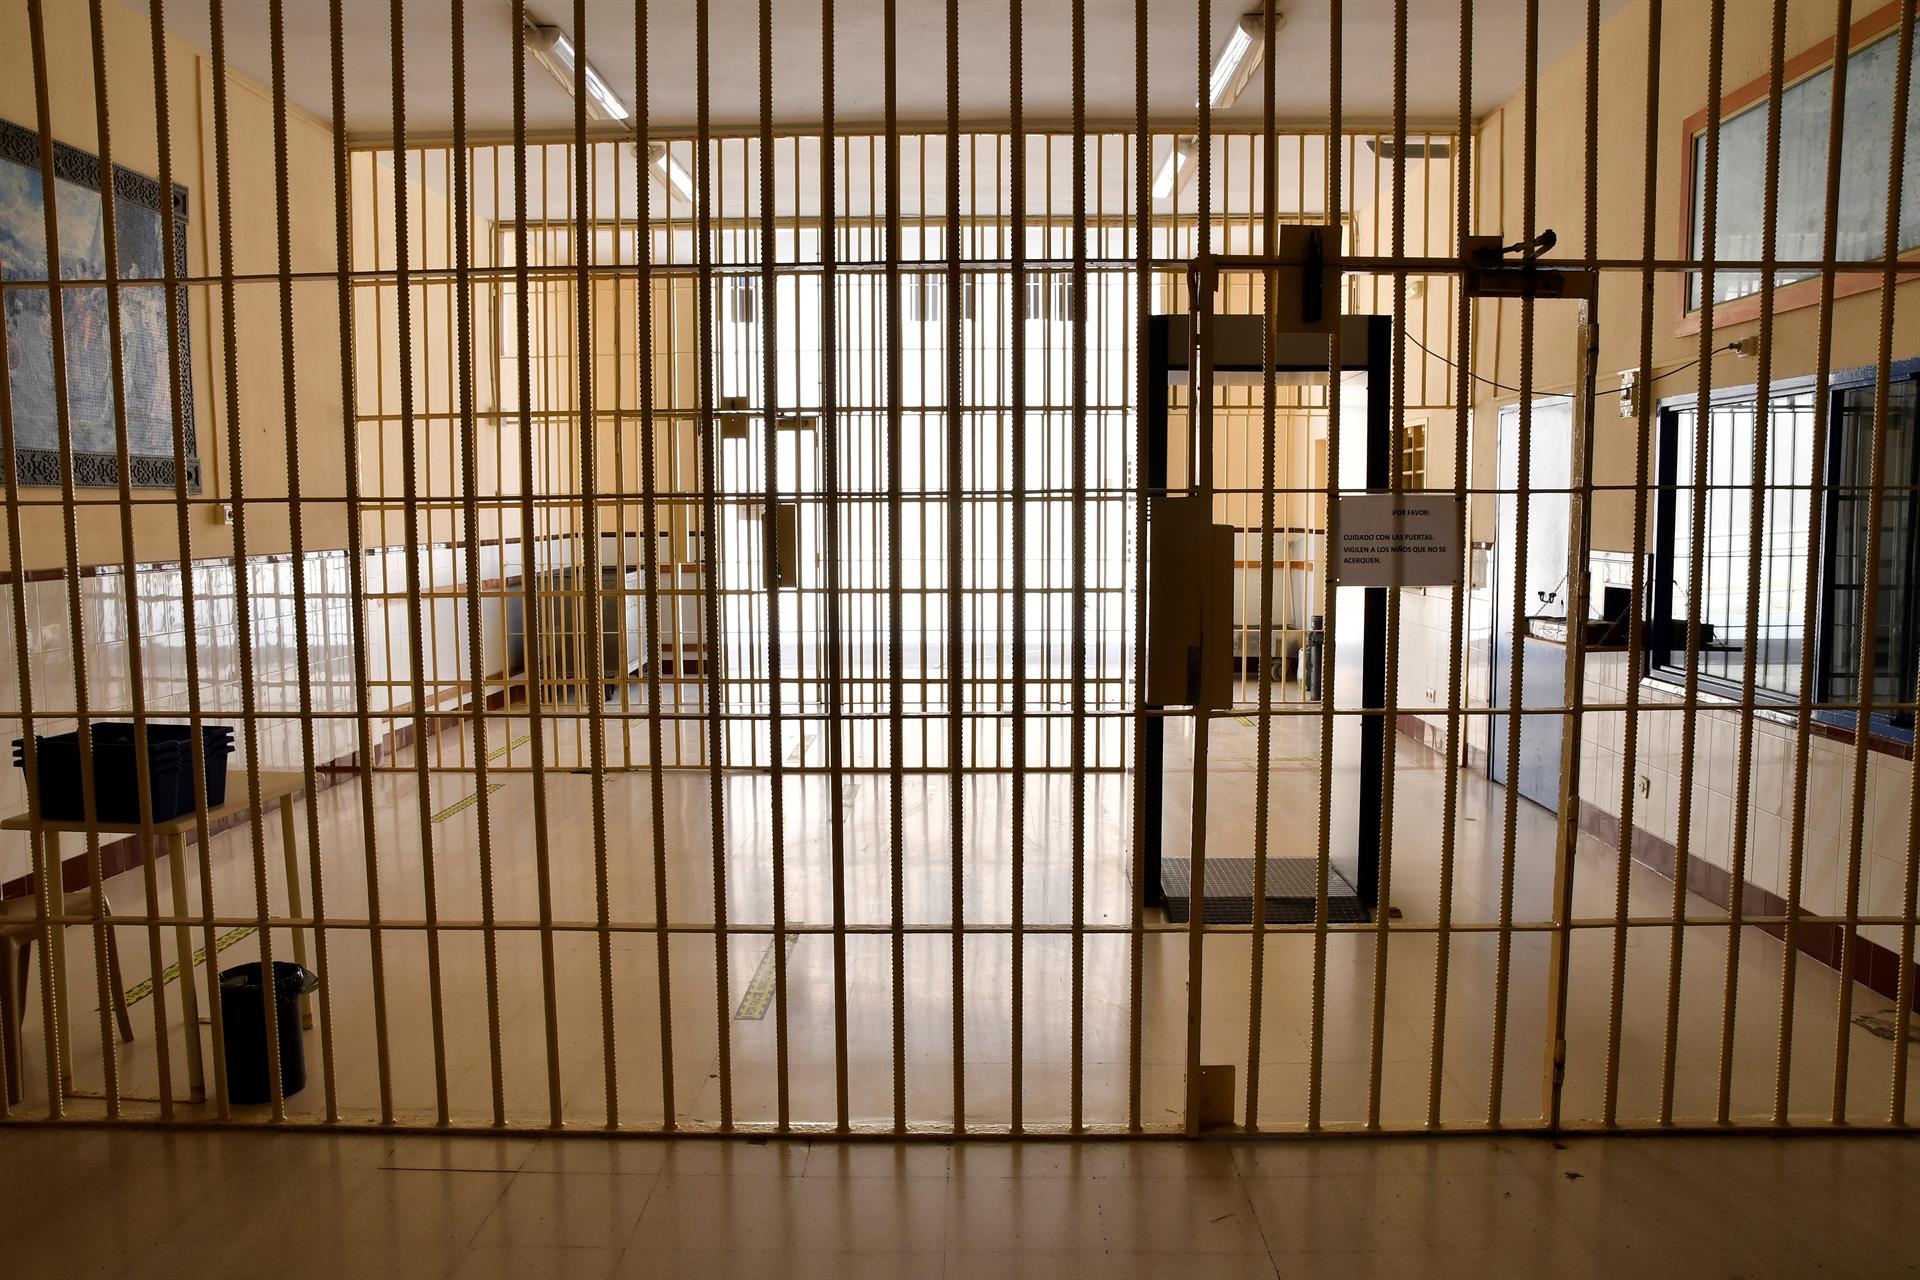 Imagen de archivo del interior del Centro penitenciario El Acebuche (Almería).EFE / Carlos Barba